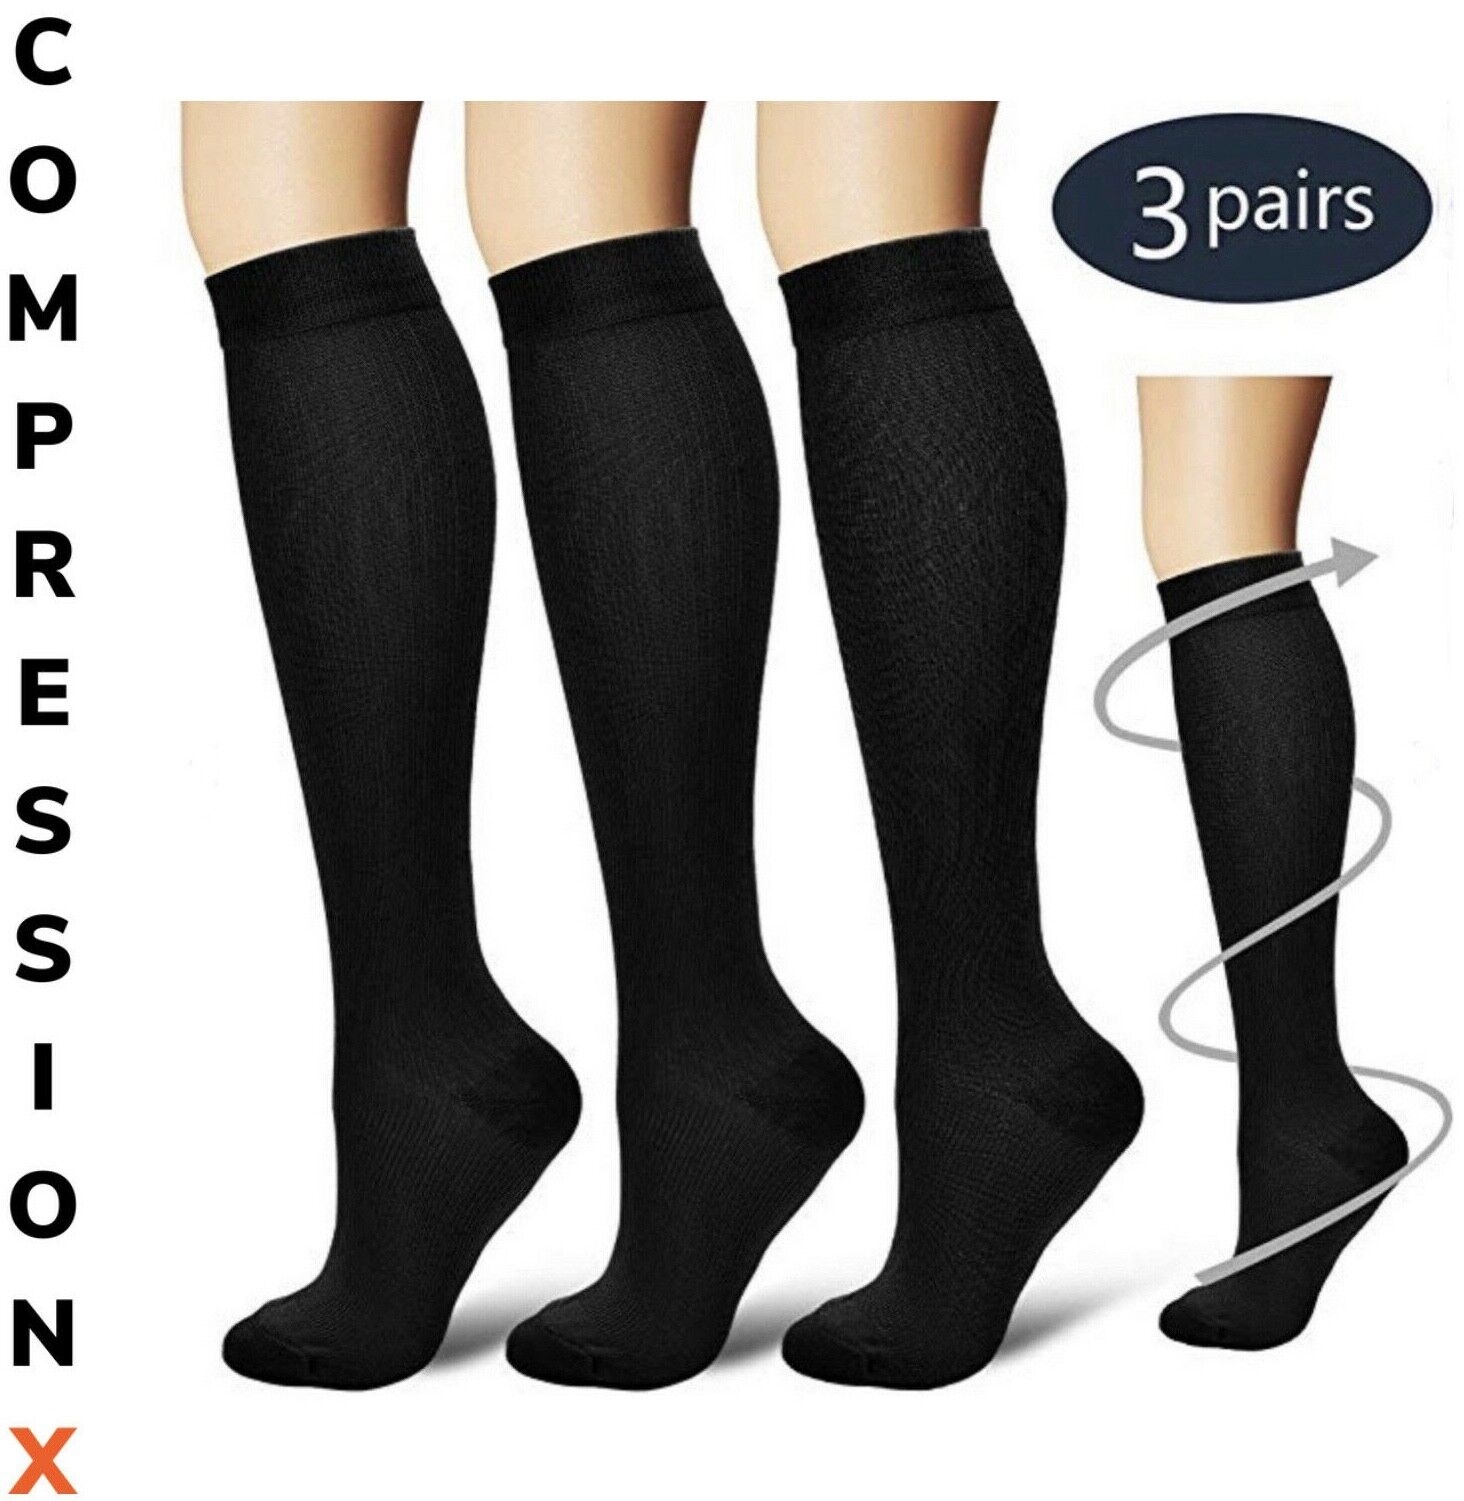  S-XXXL Compression X Socks Knee High 20-30mmHg Graduated Me